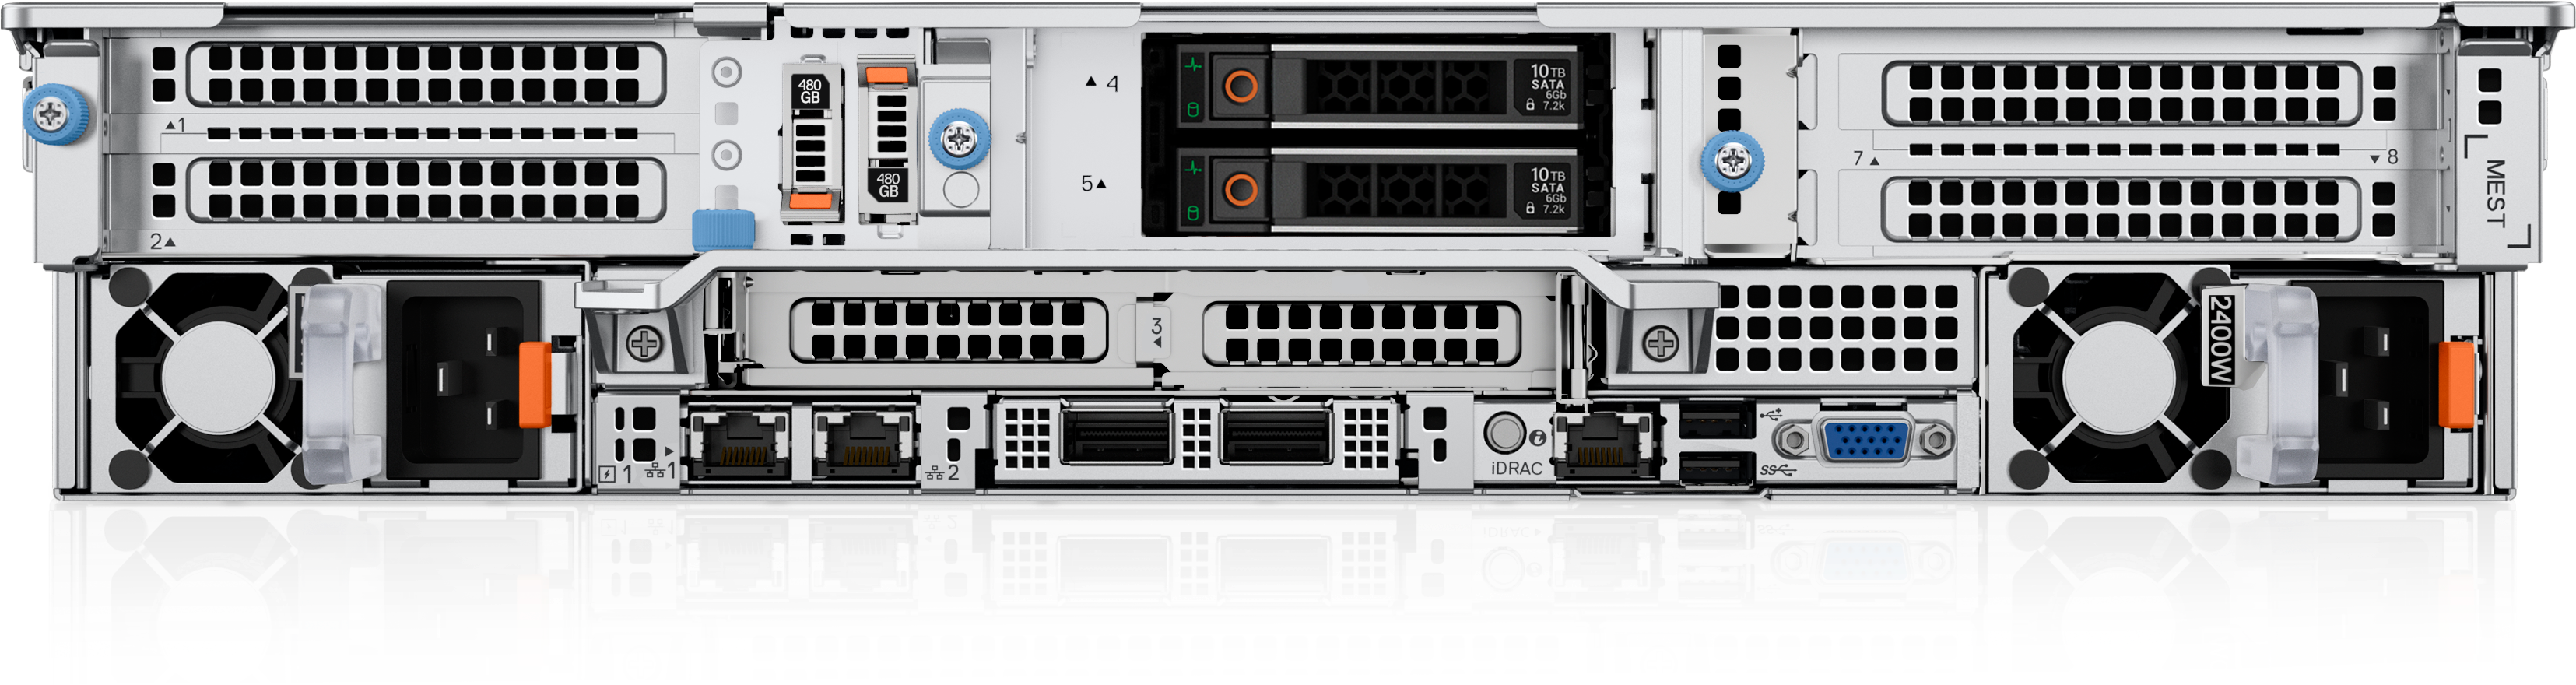 PowerEdge R760ラックサーバー | Dell 日本